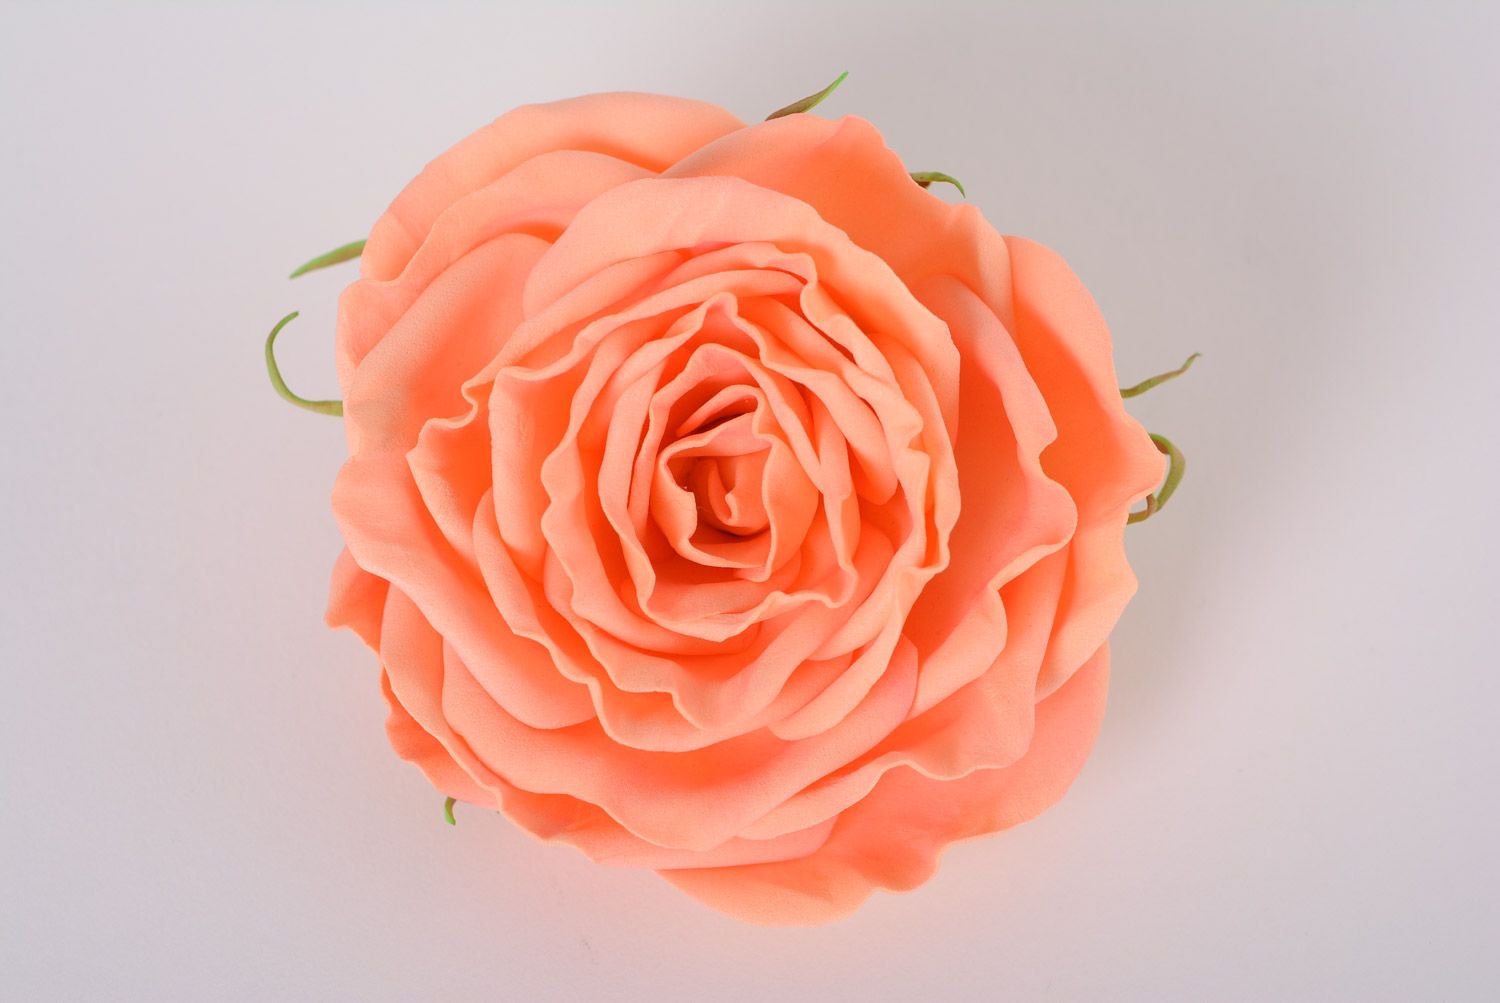 Яркая заколка для волос из фоамирана ручной работы в виде бутона розы оранжевая фото 1